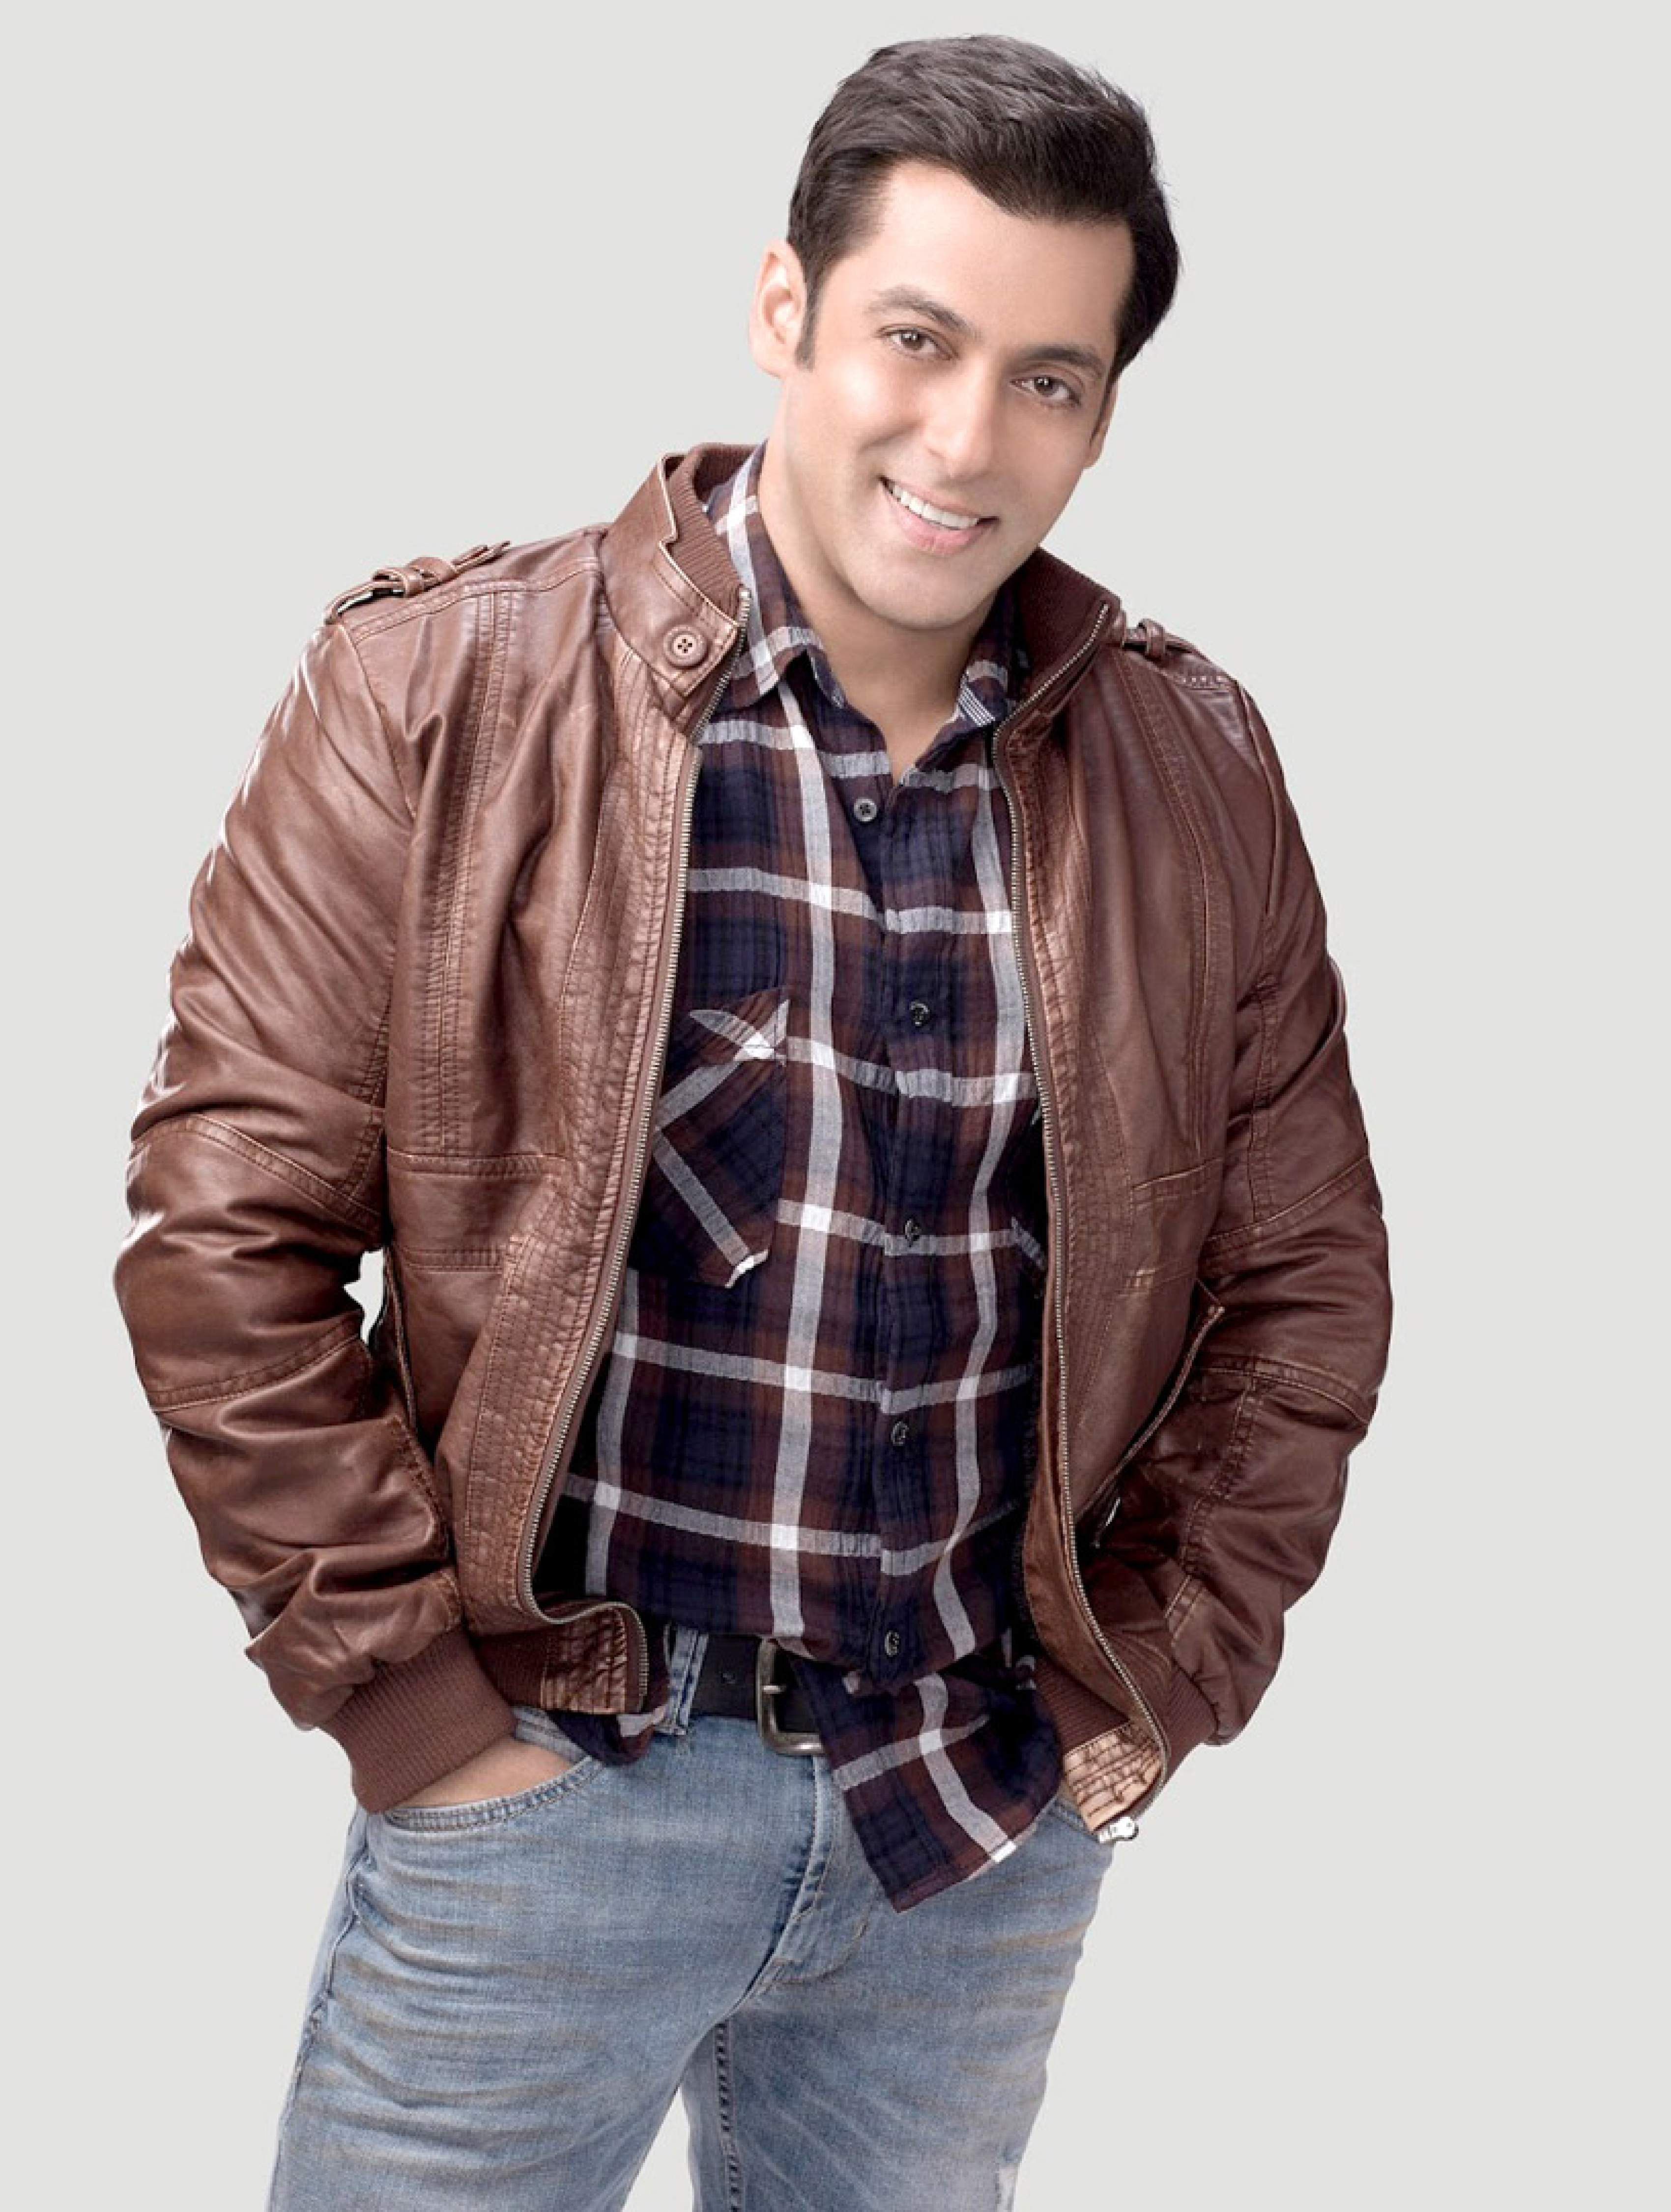 Wallpaper jacket, actor, Indian actor, Salman Khan images for desktop,  section мужчины - download